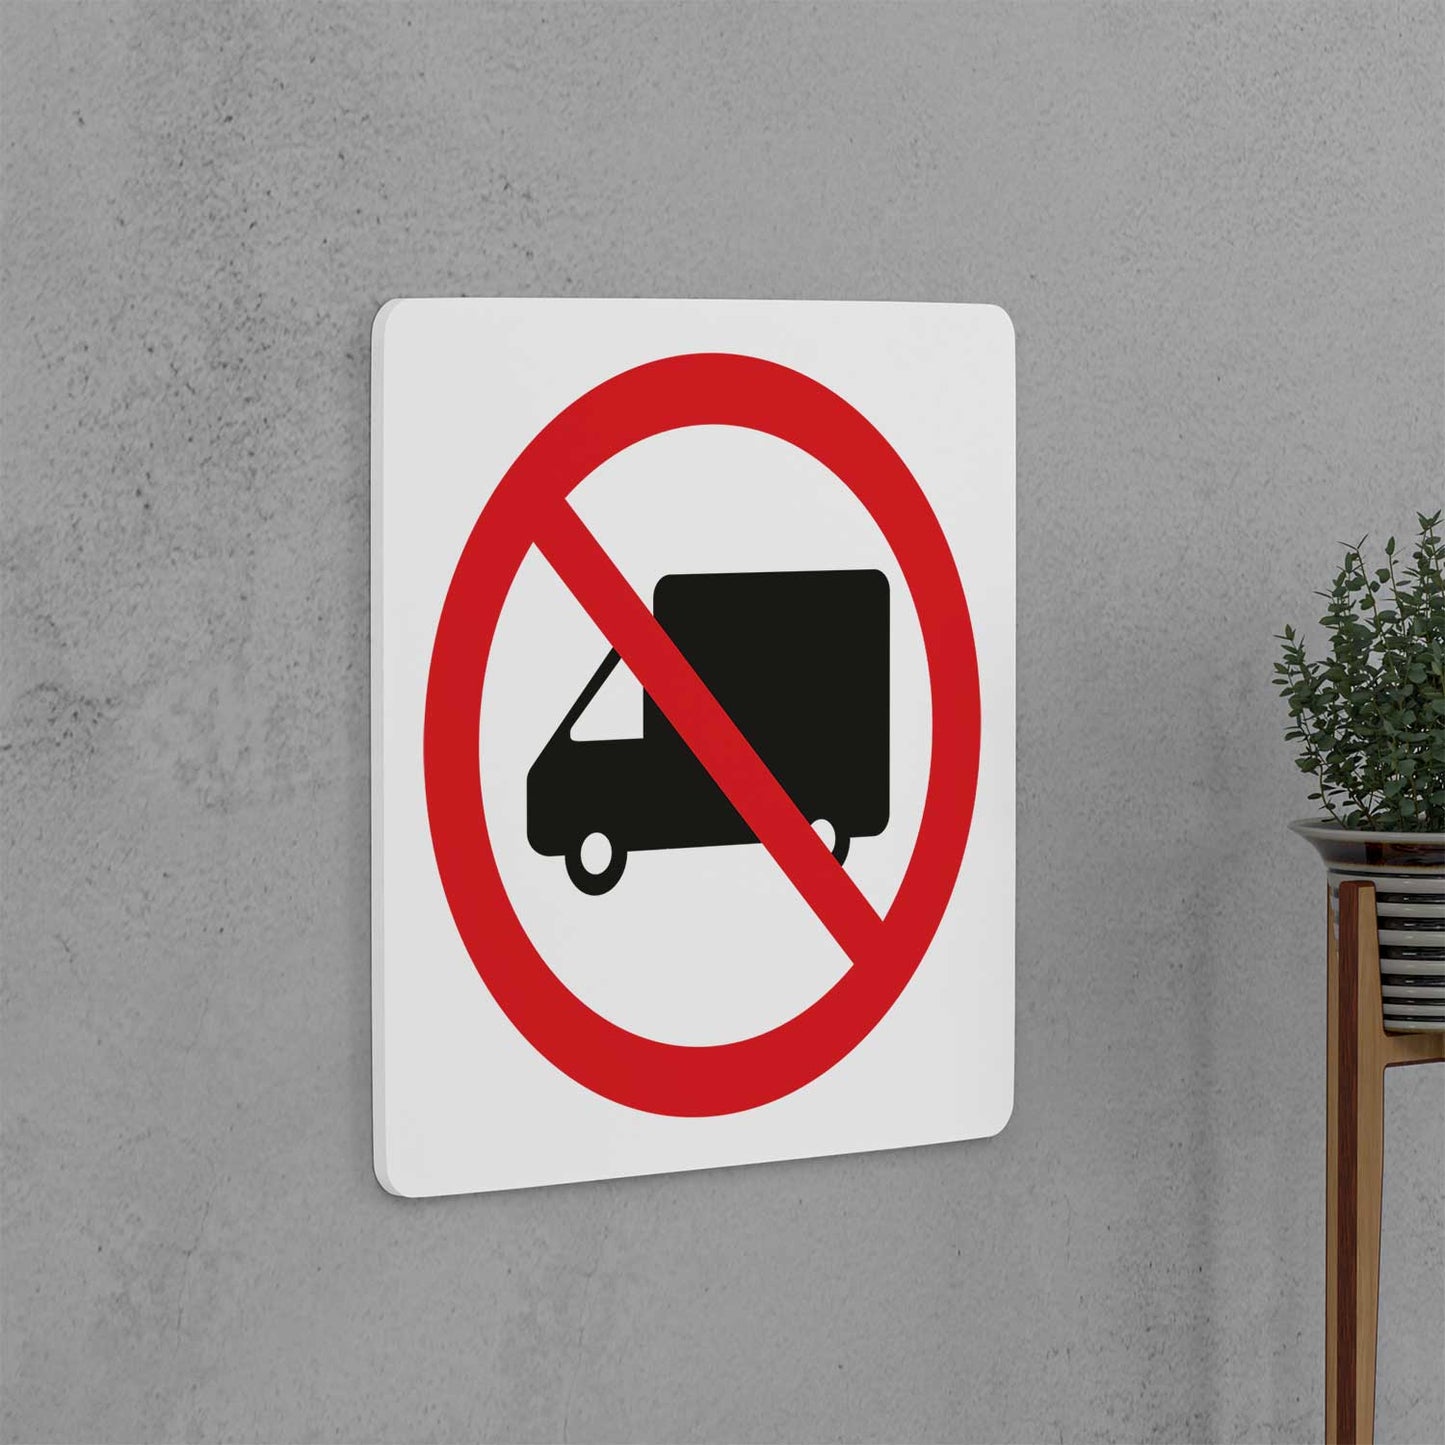 No Heavy Vehicles Sign